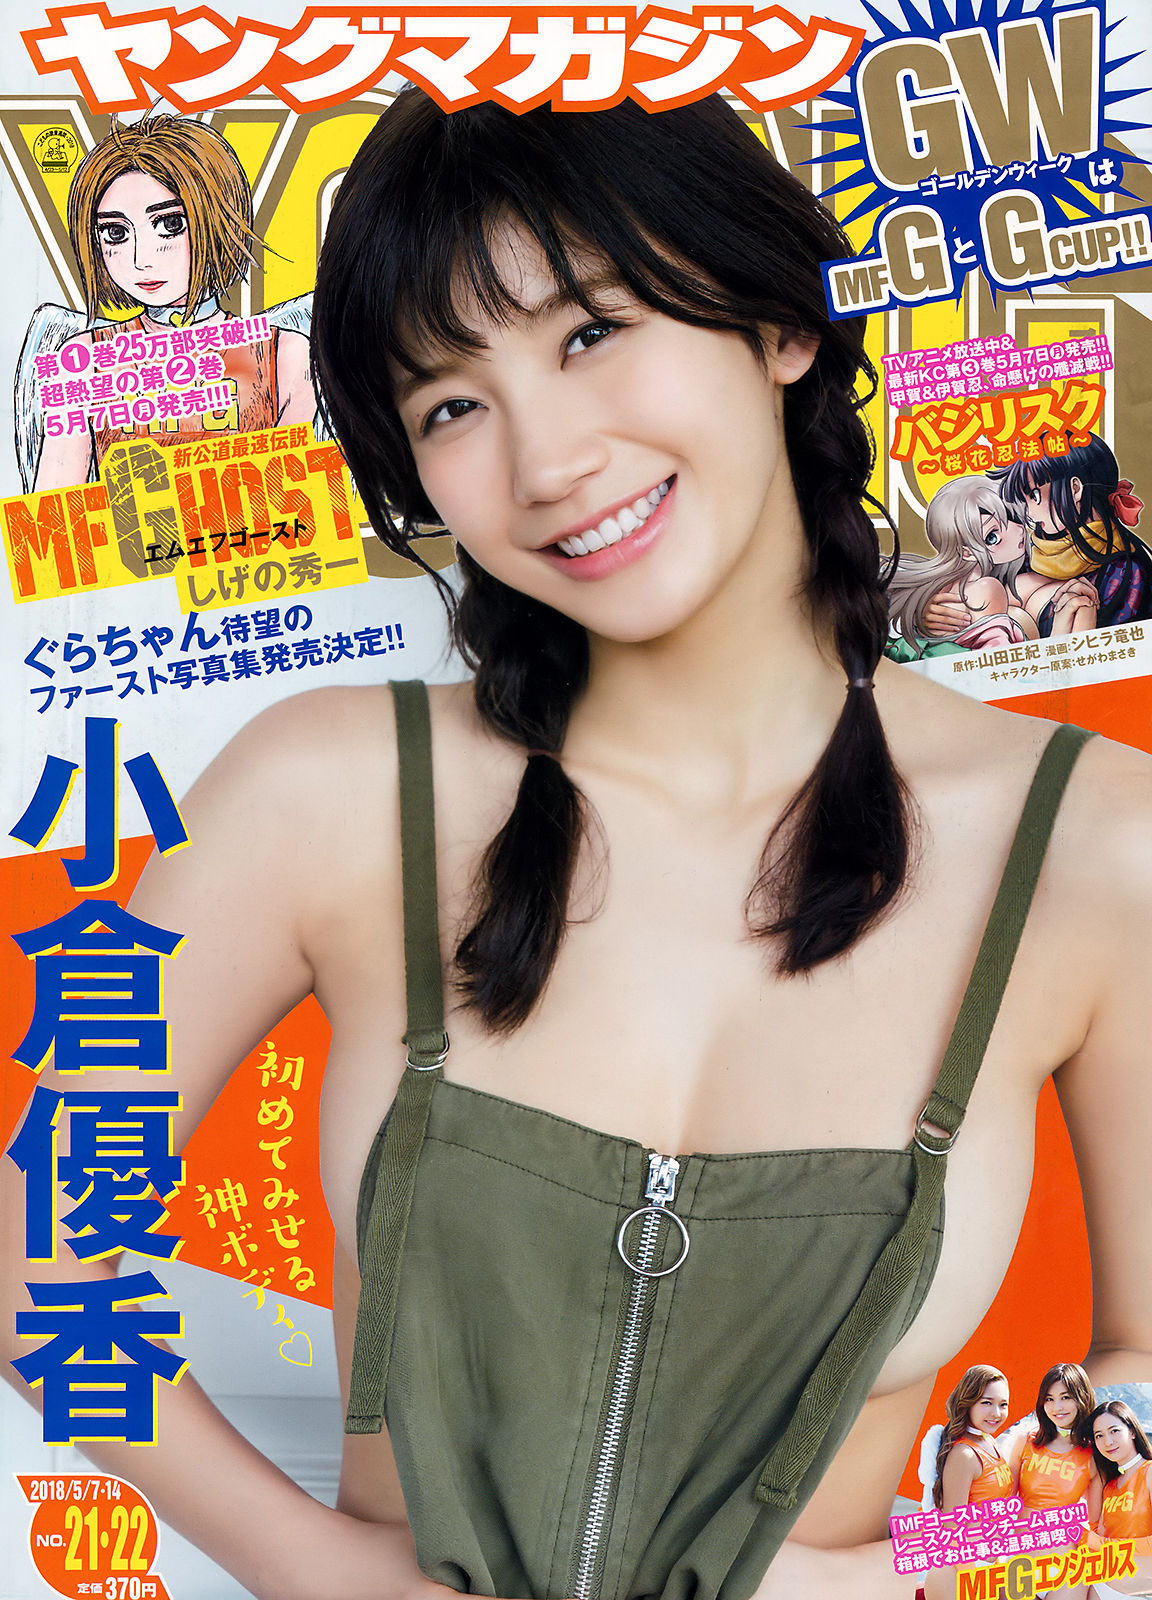 [Young Magazine]日本嫩模:小仓优香(小倉優香)无圣光私房照片在线浏览(12P)